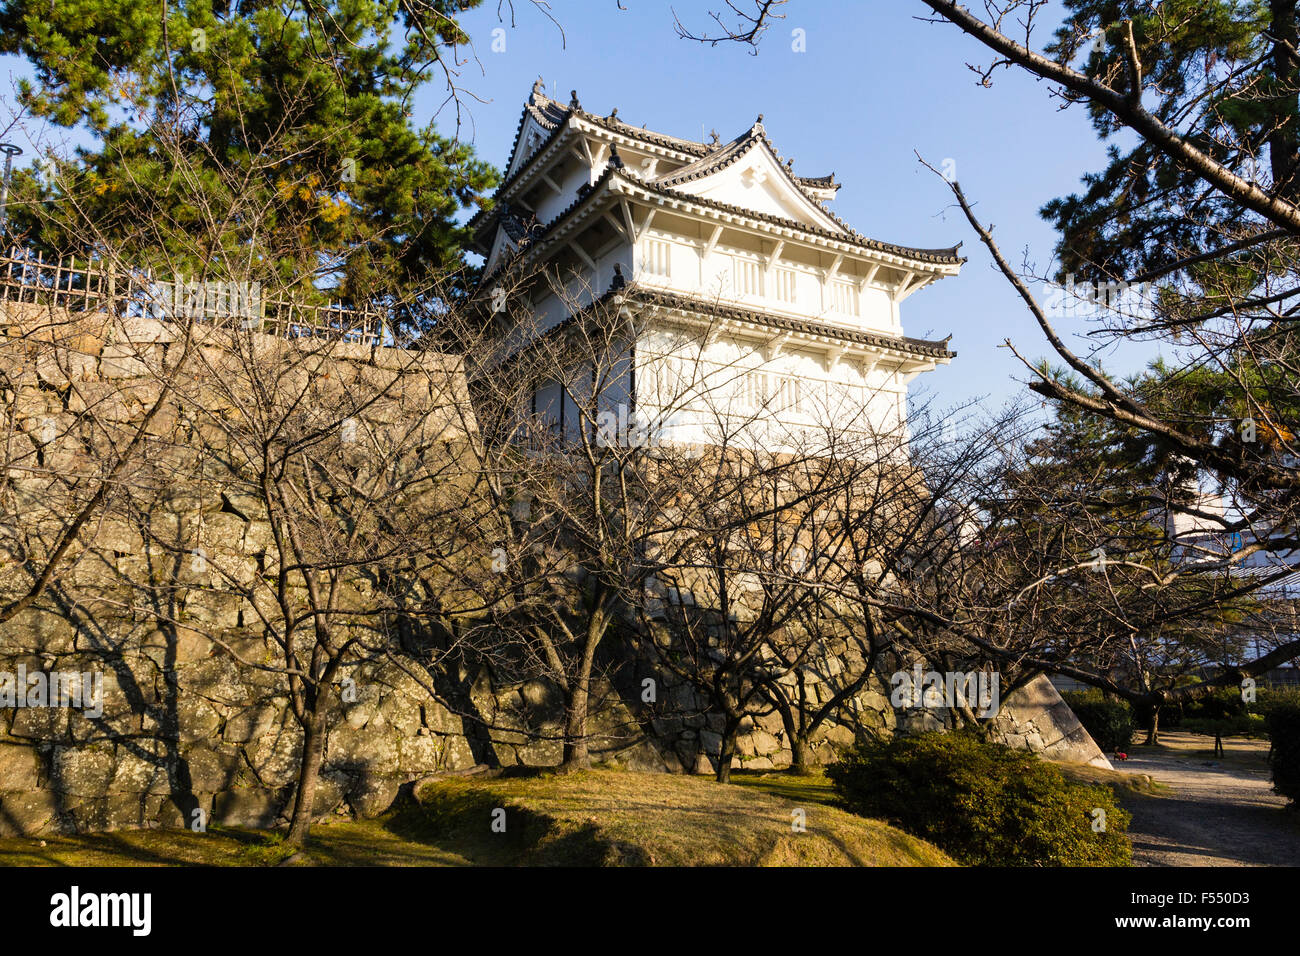 Le Japon, Fukuyama castle. La structure d'origine, la yagura Fushimi, tourelle, et des murs en pierre d'Ishigaki en plein soleil en hiver. Banque D'Images